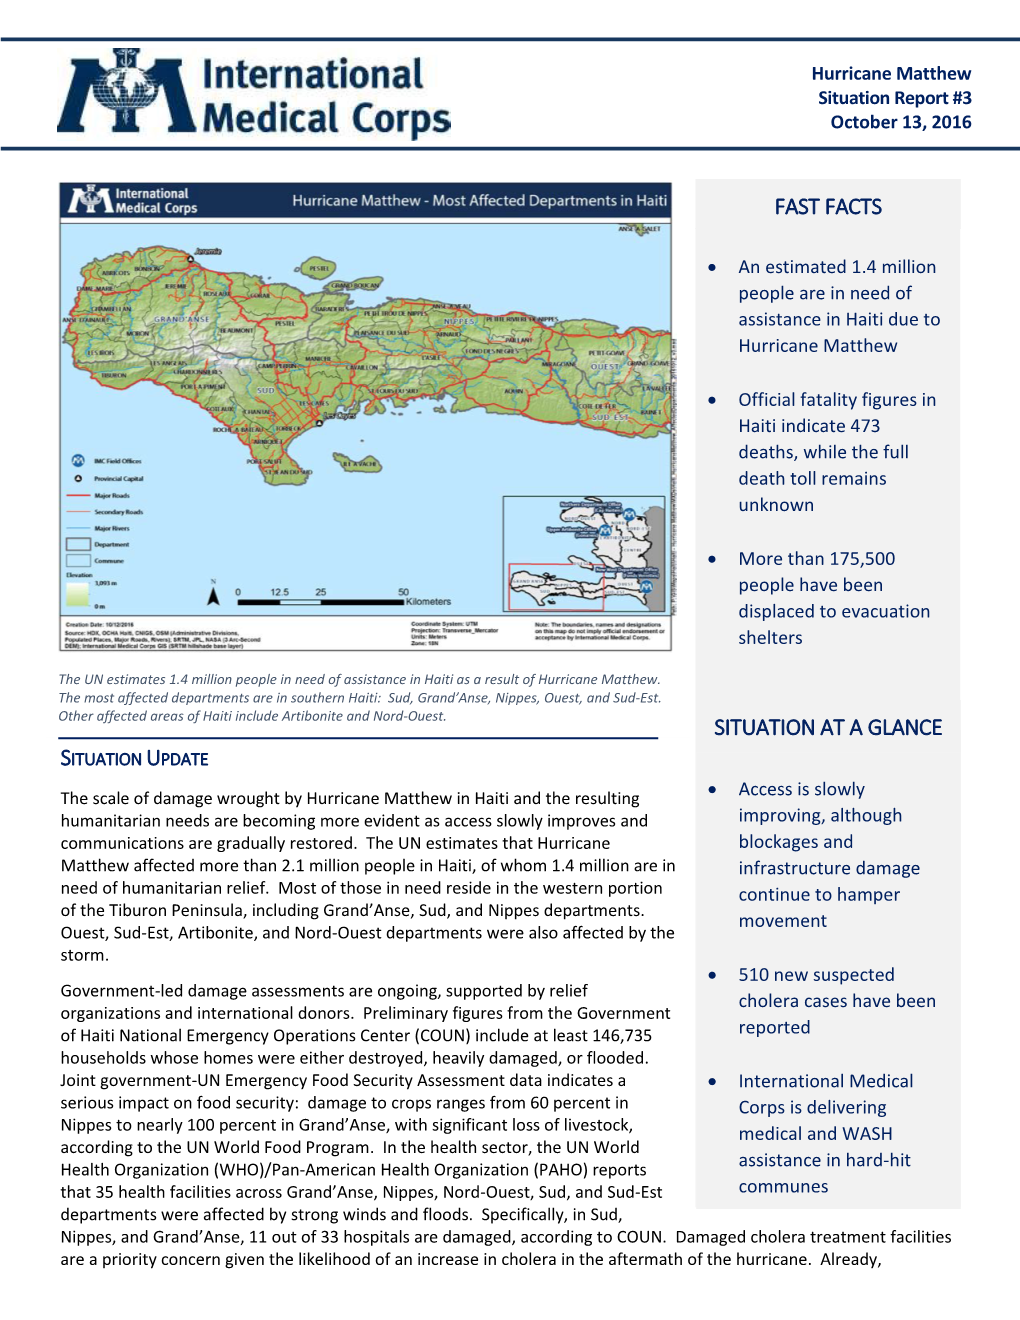 Hurricane Matthew External Situation Report 3